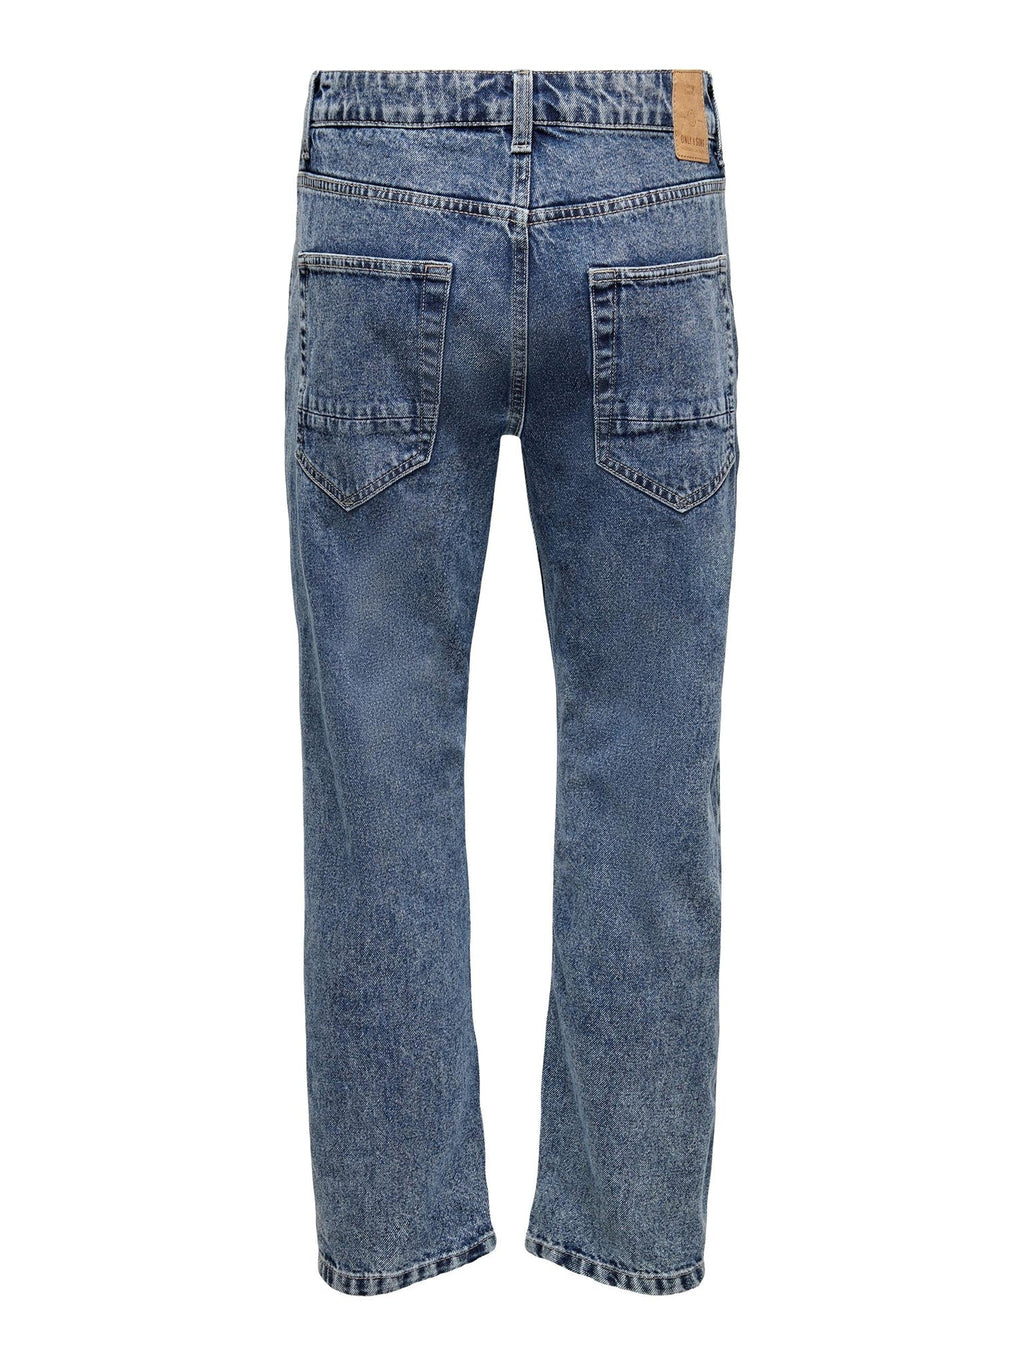 Okrajové džínsy - modrý džínsovina